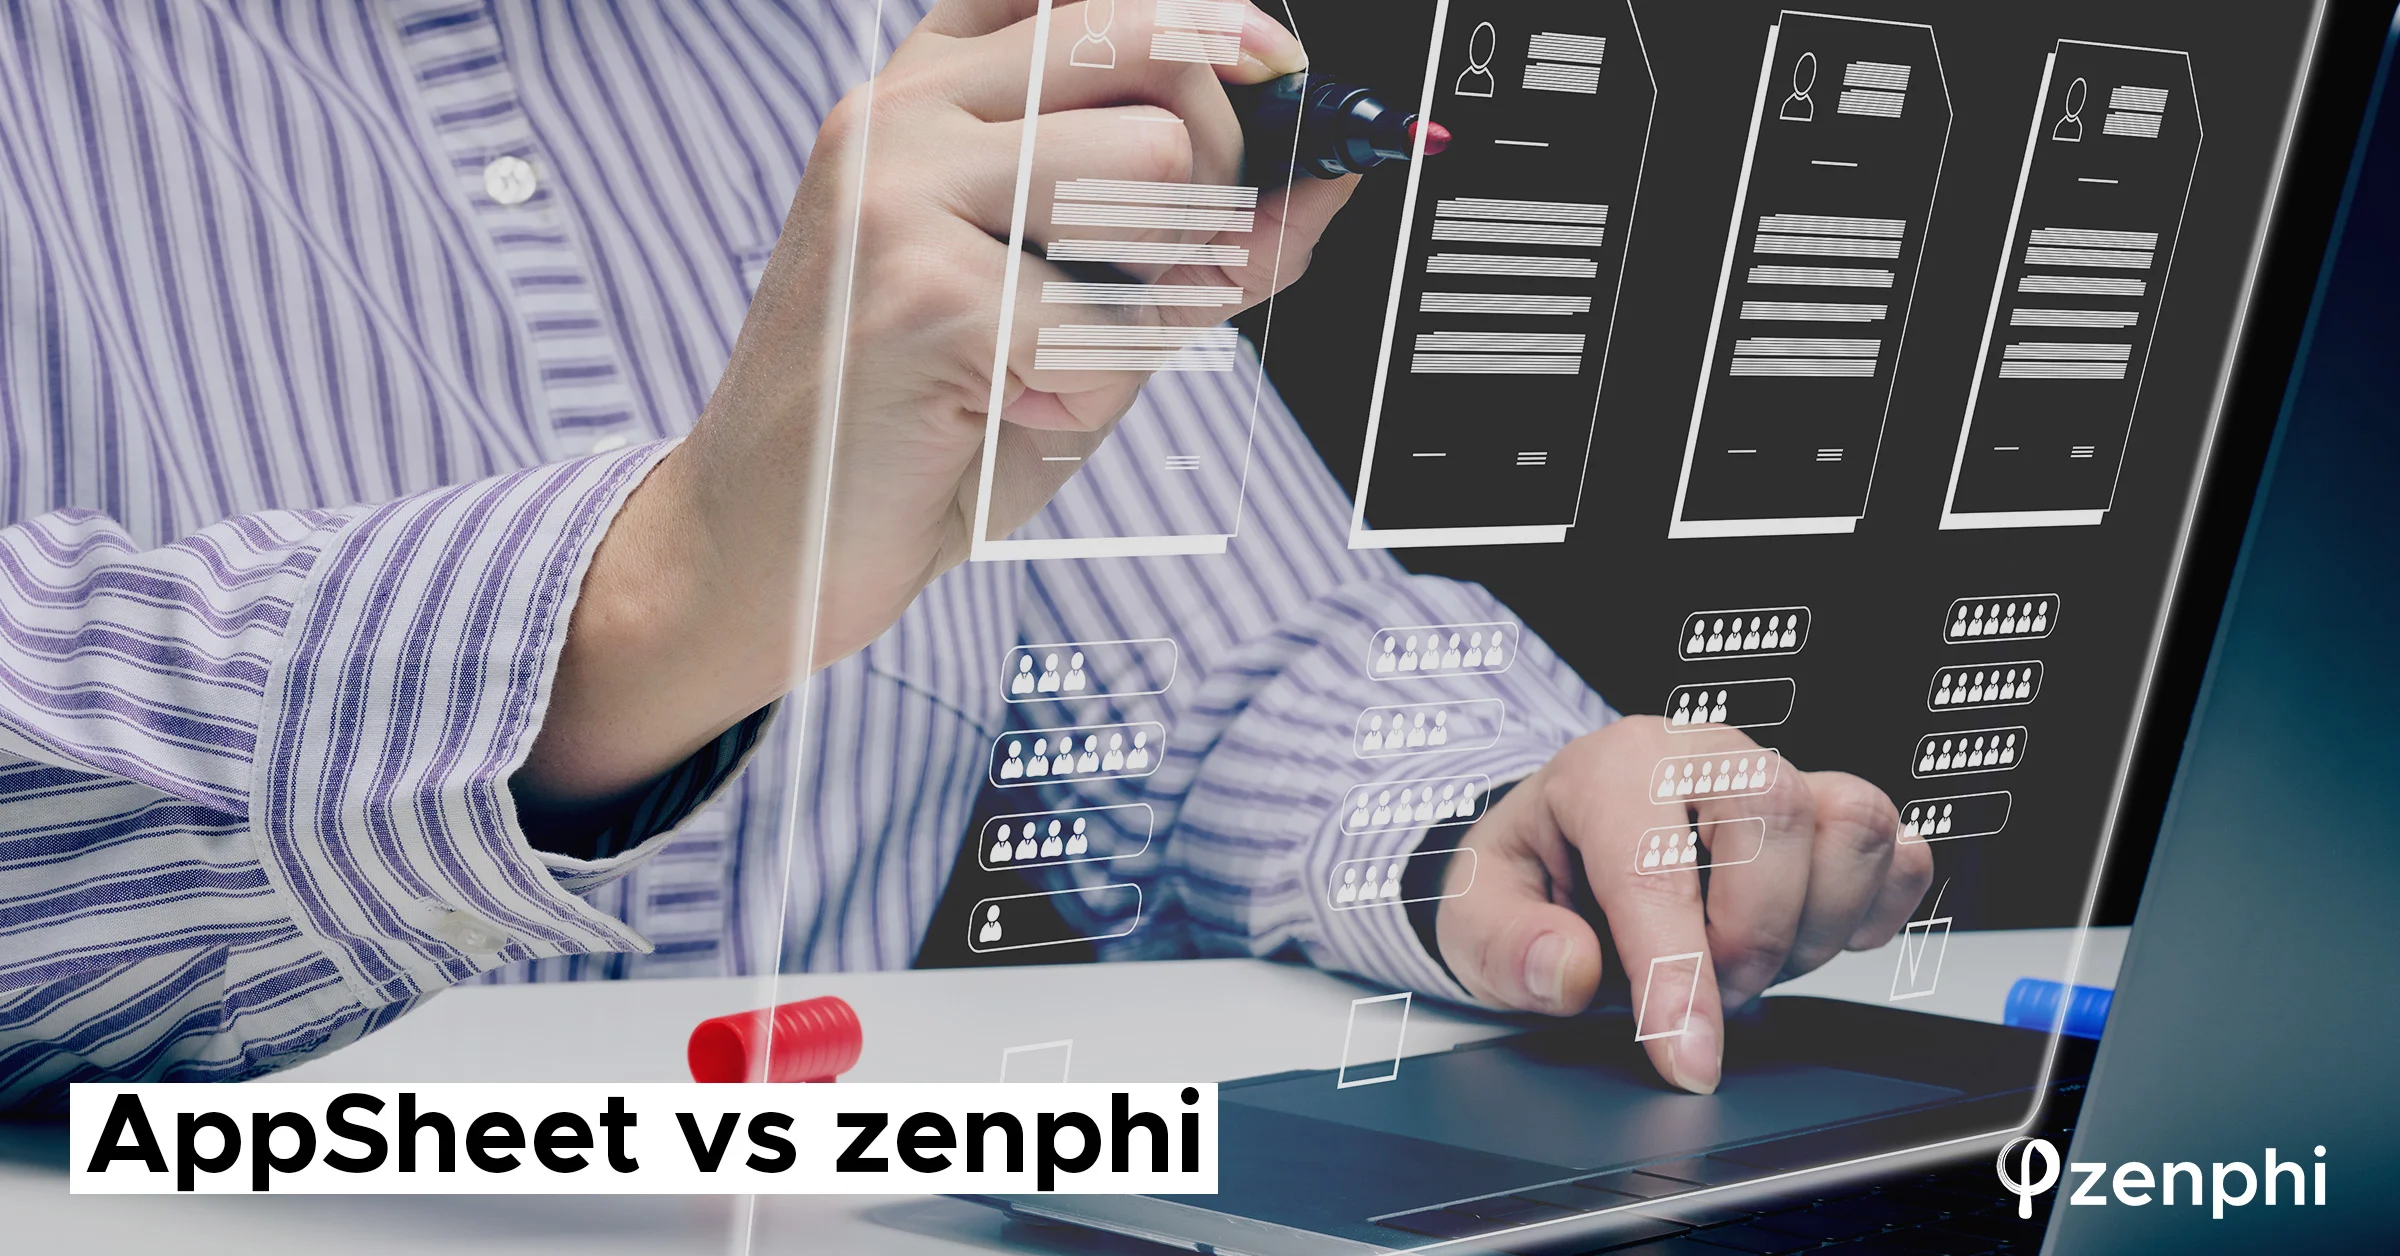 AppSheet vs zenphi